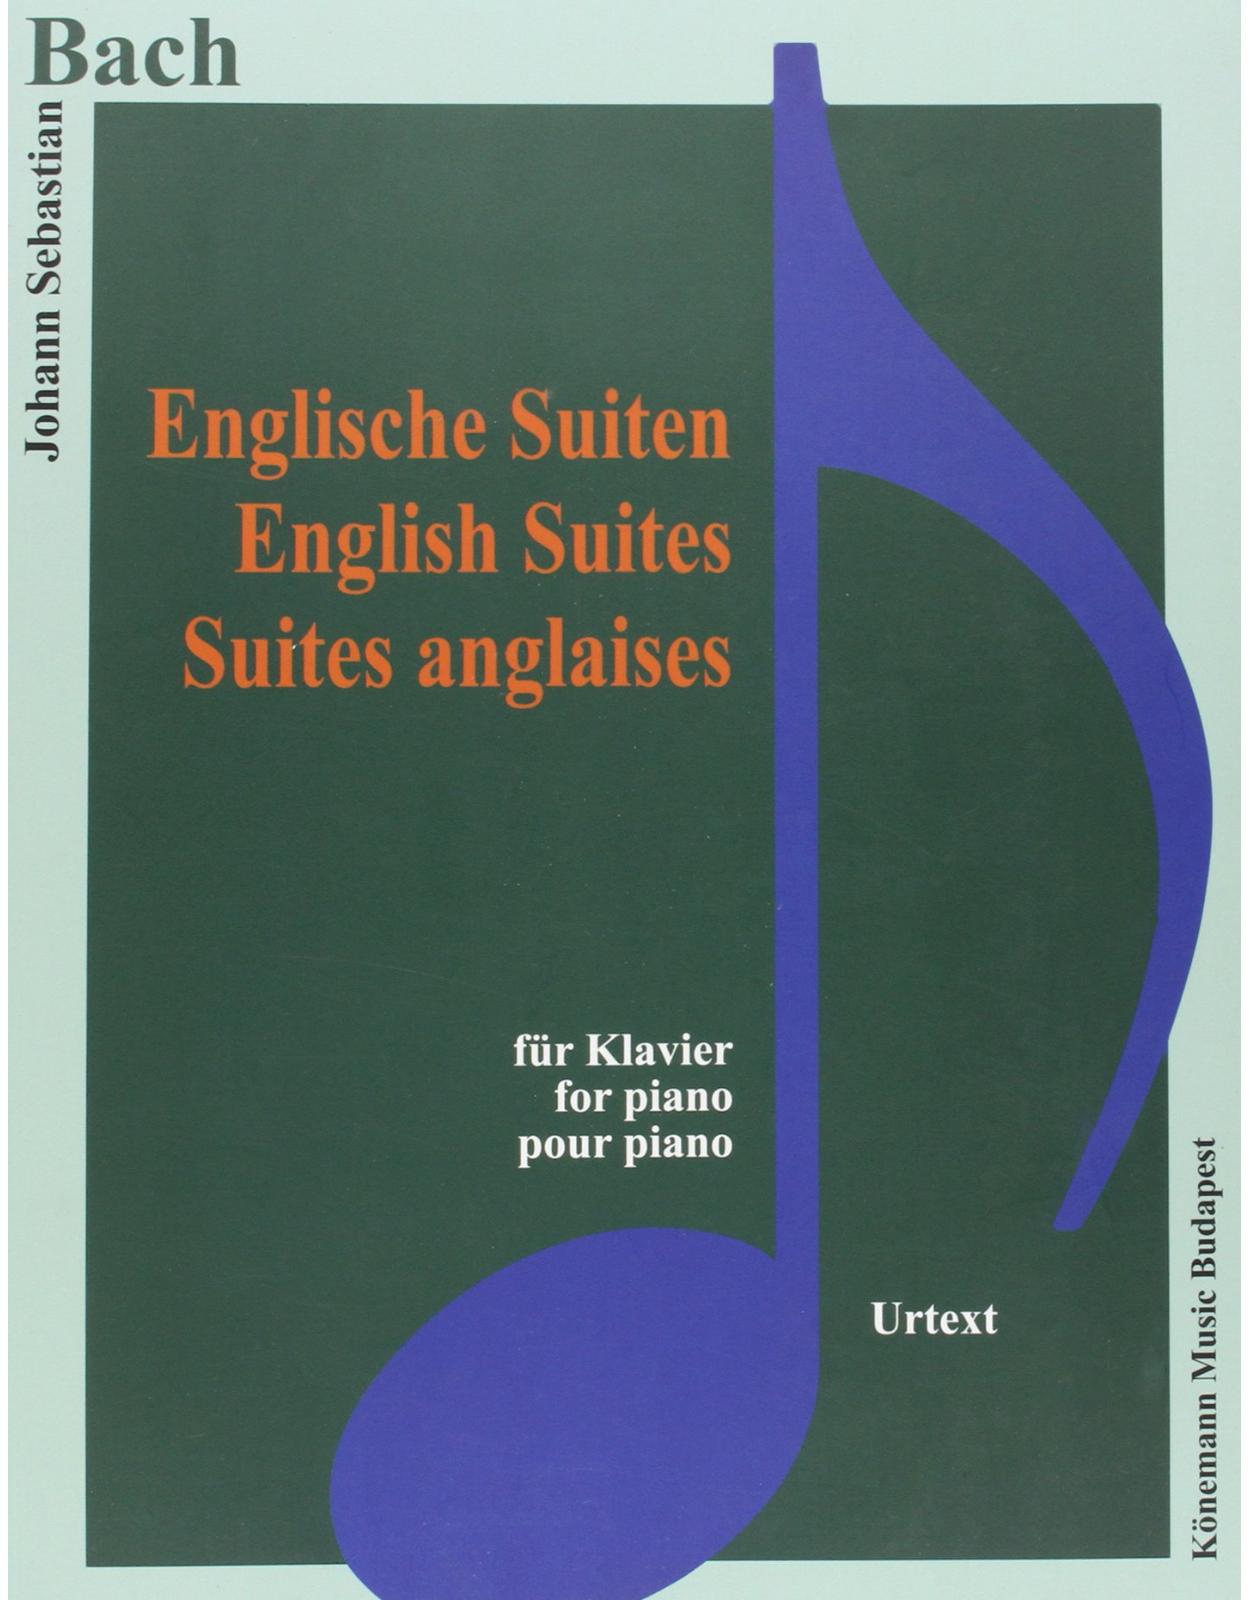 Bach, Englische Suiten 